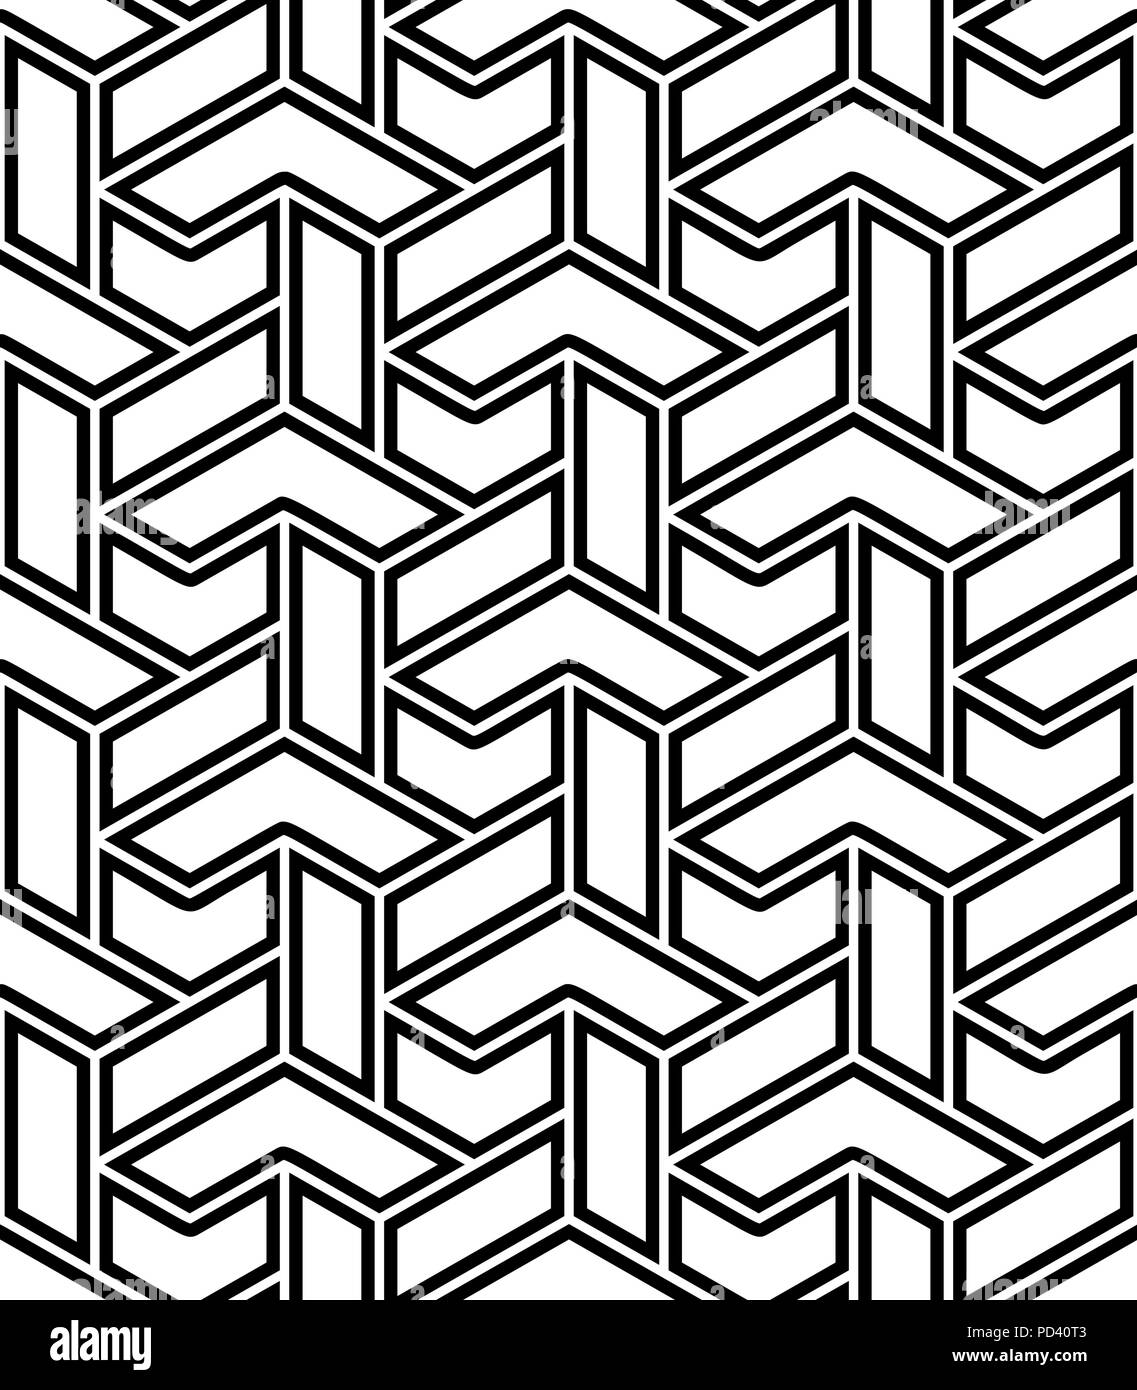 Diseños geométricos Imágenes de stock en blanco y negro - Alamy